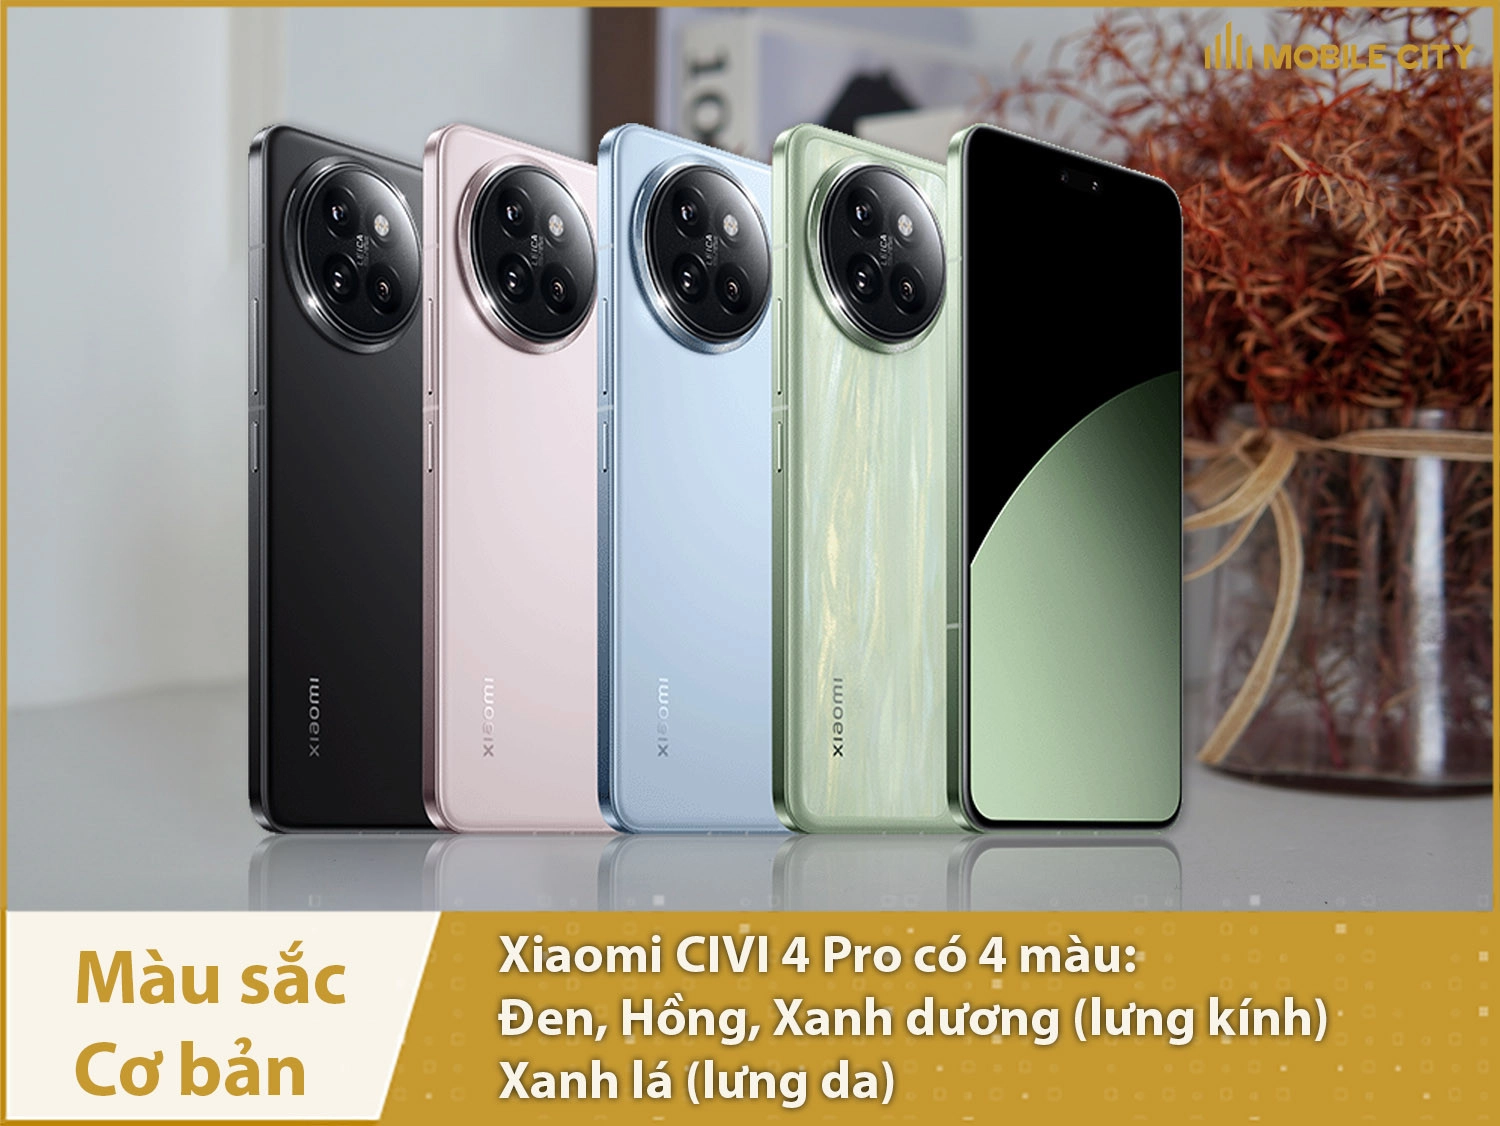 Xiaomi CIVI 4 Pro có 4 màu cơ bản: Đen, Xanh dương, Hồng và Xanh lá